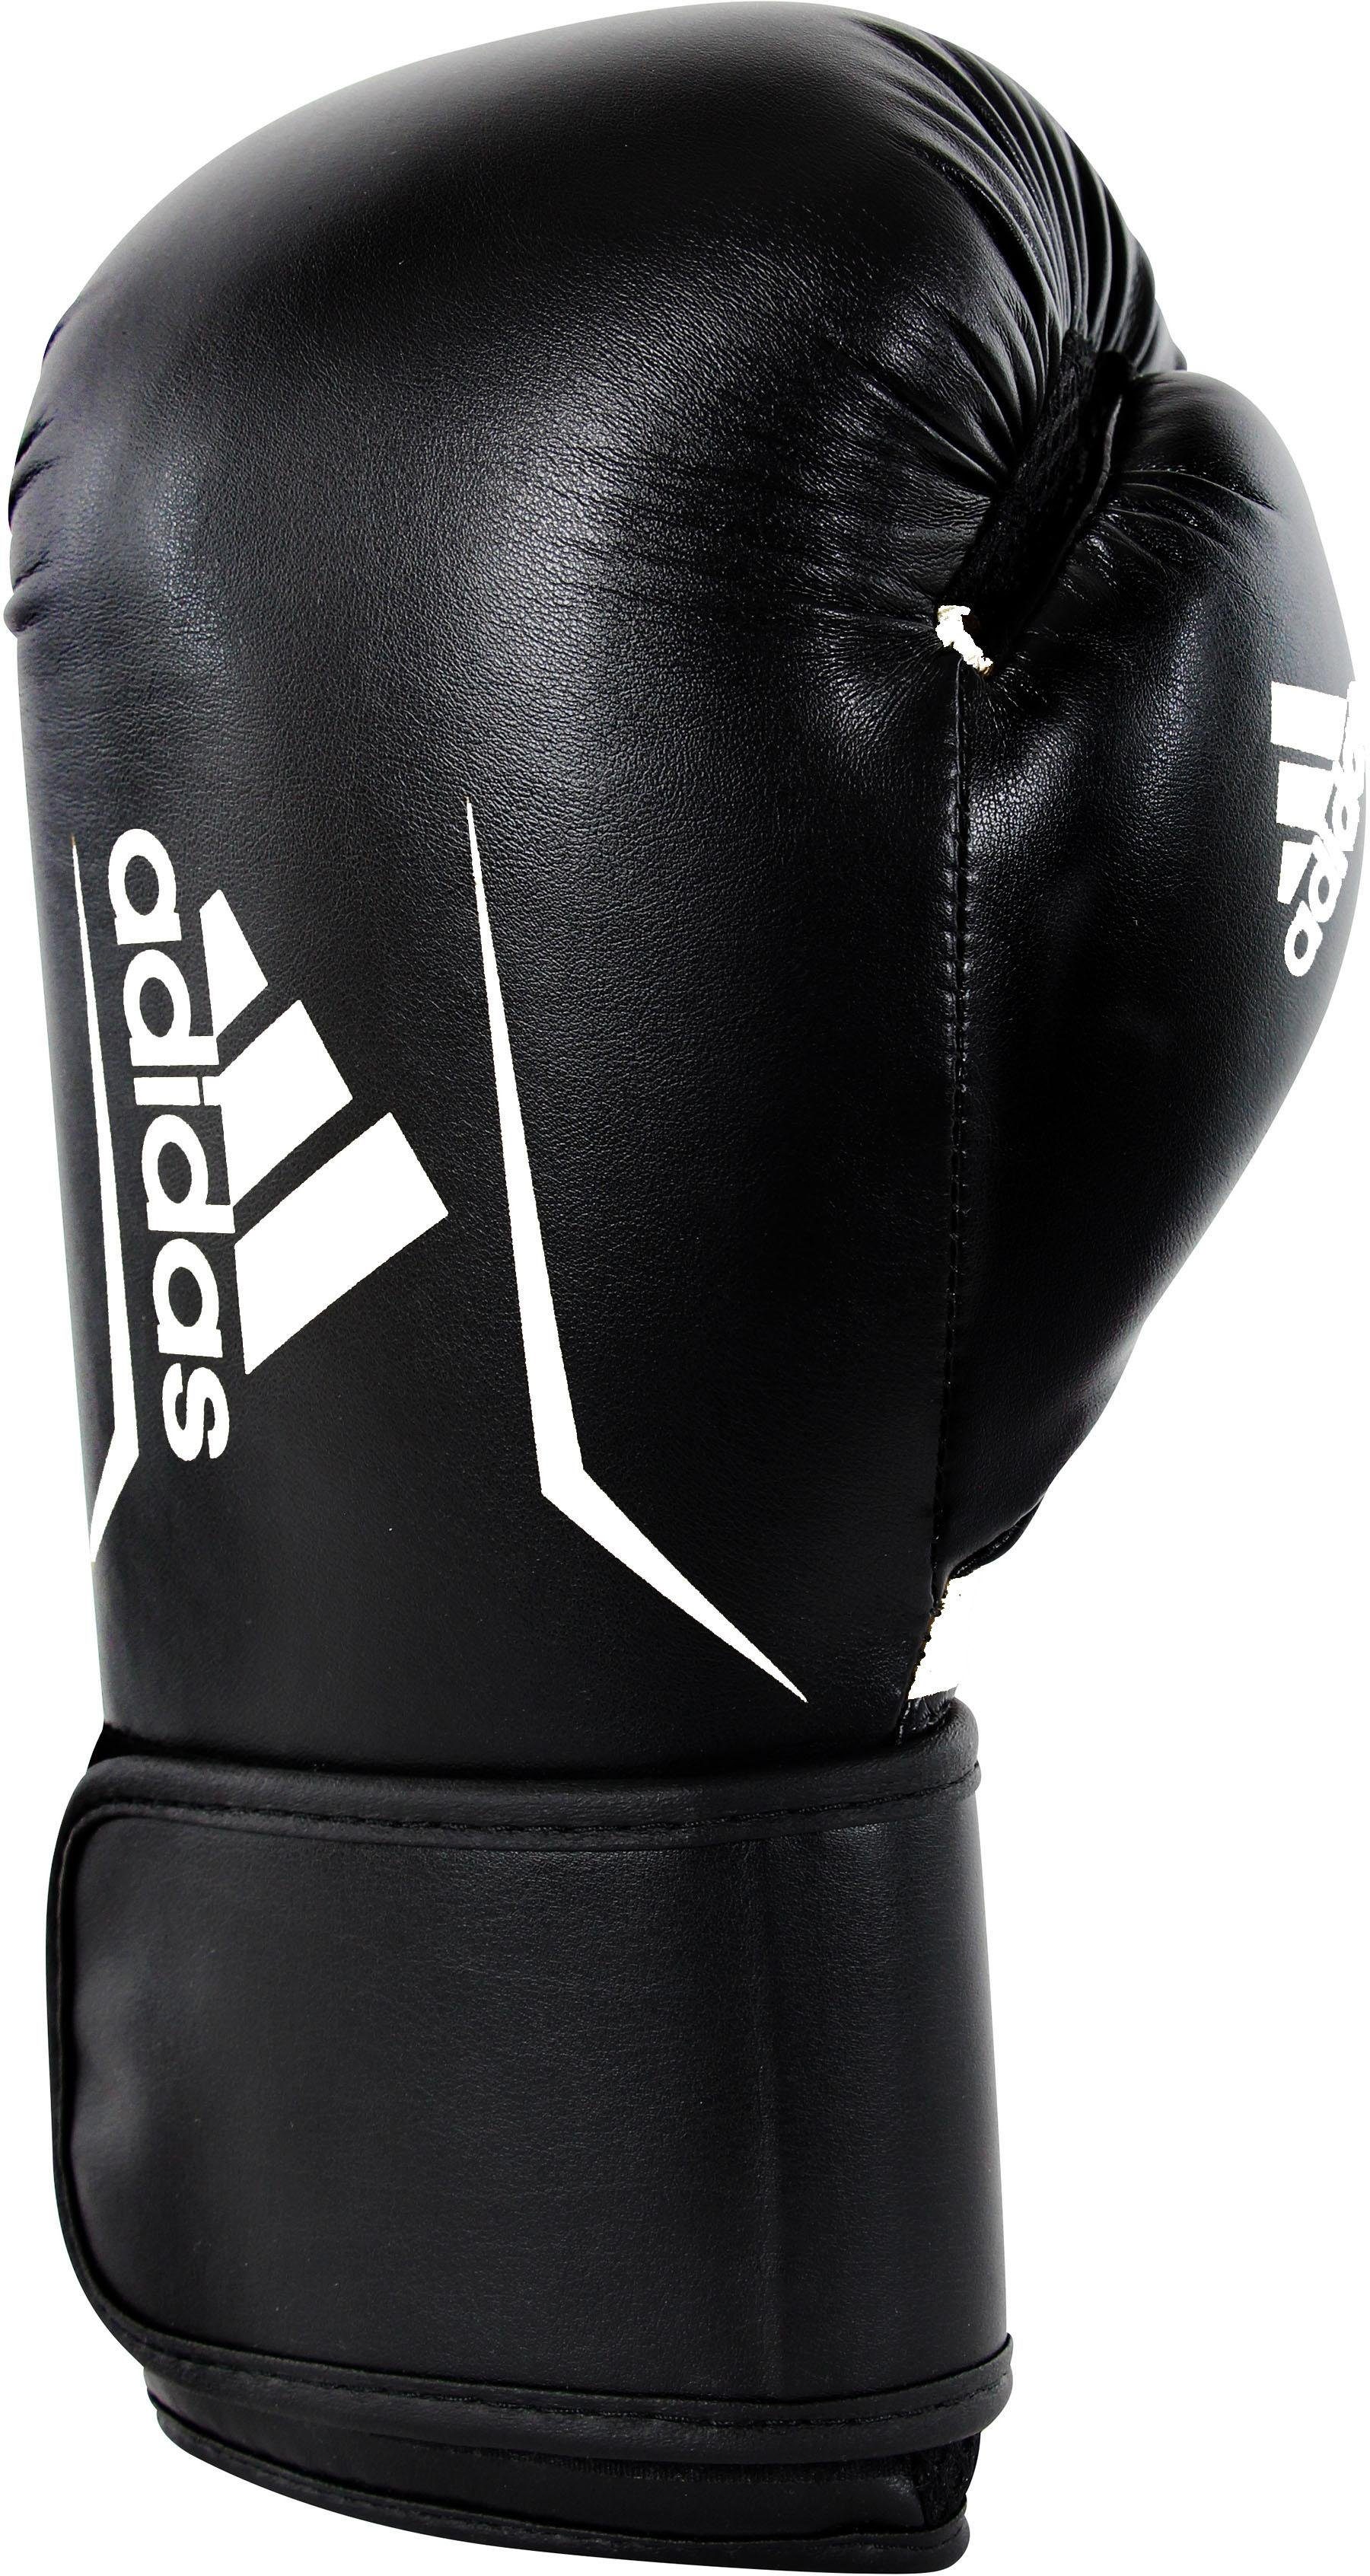 adidas Performance Boxhandschuhe Speed 100 schwarz/weiß